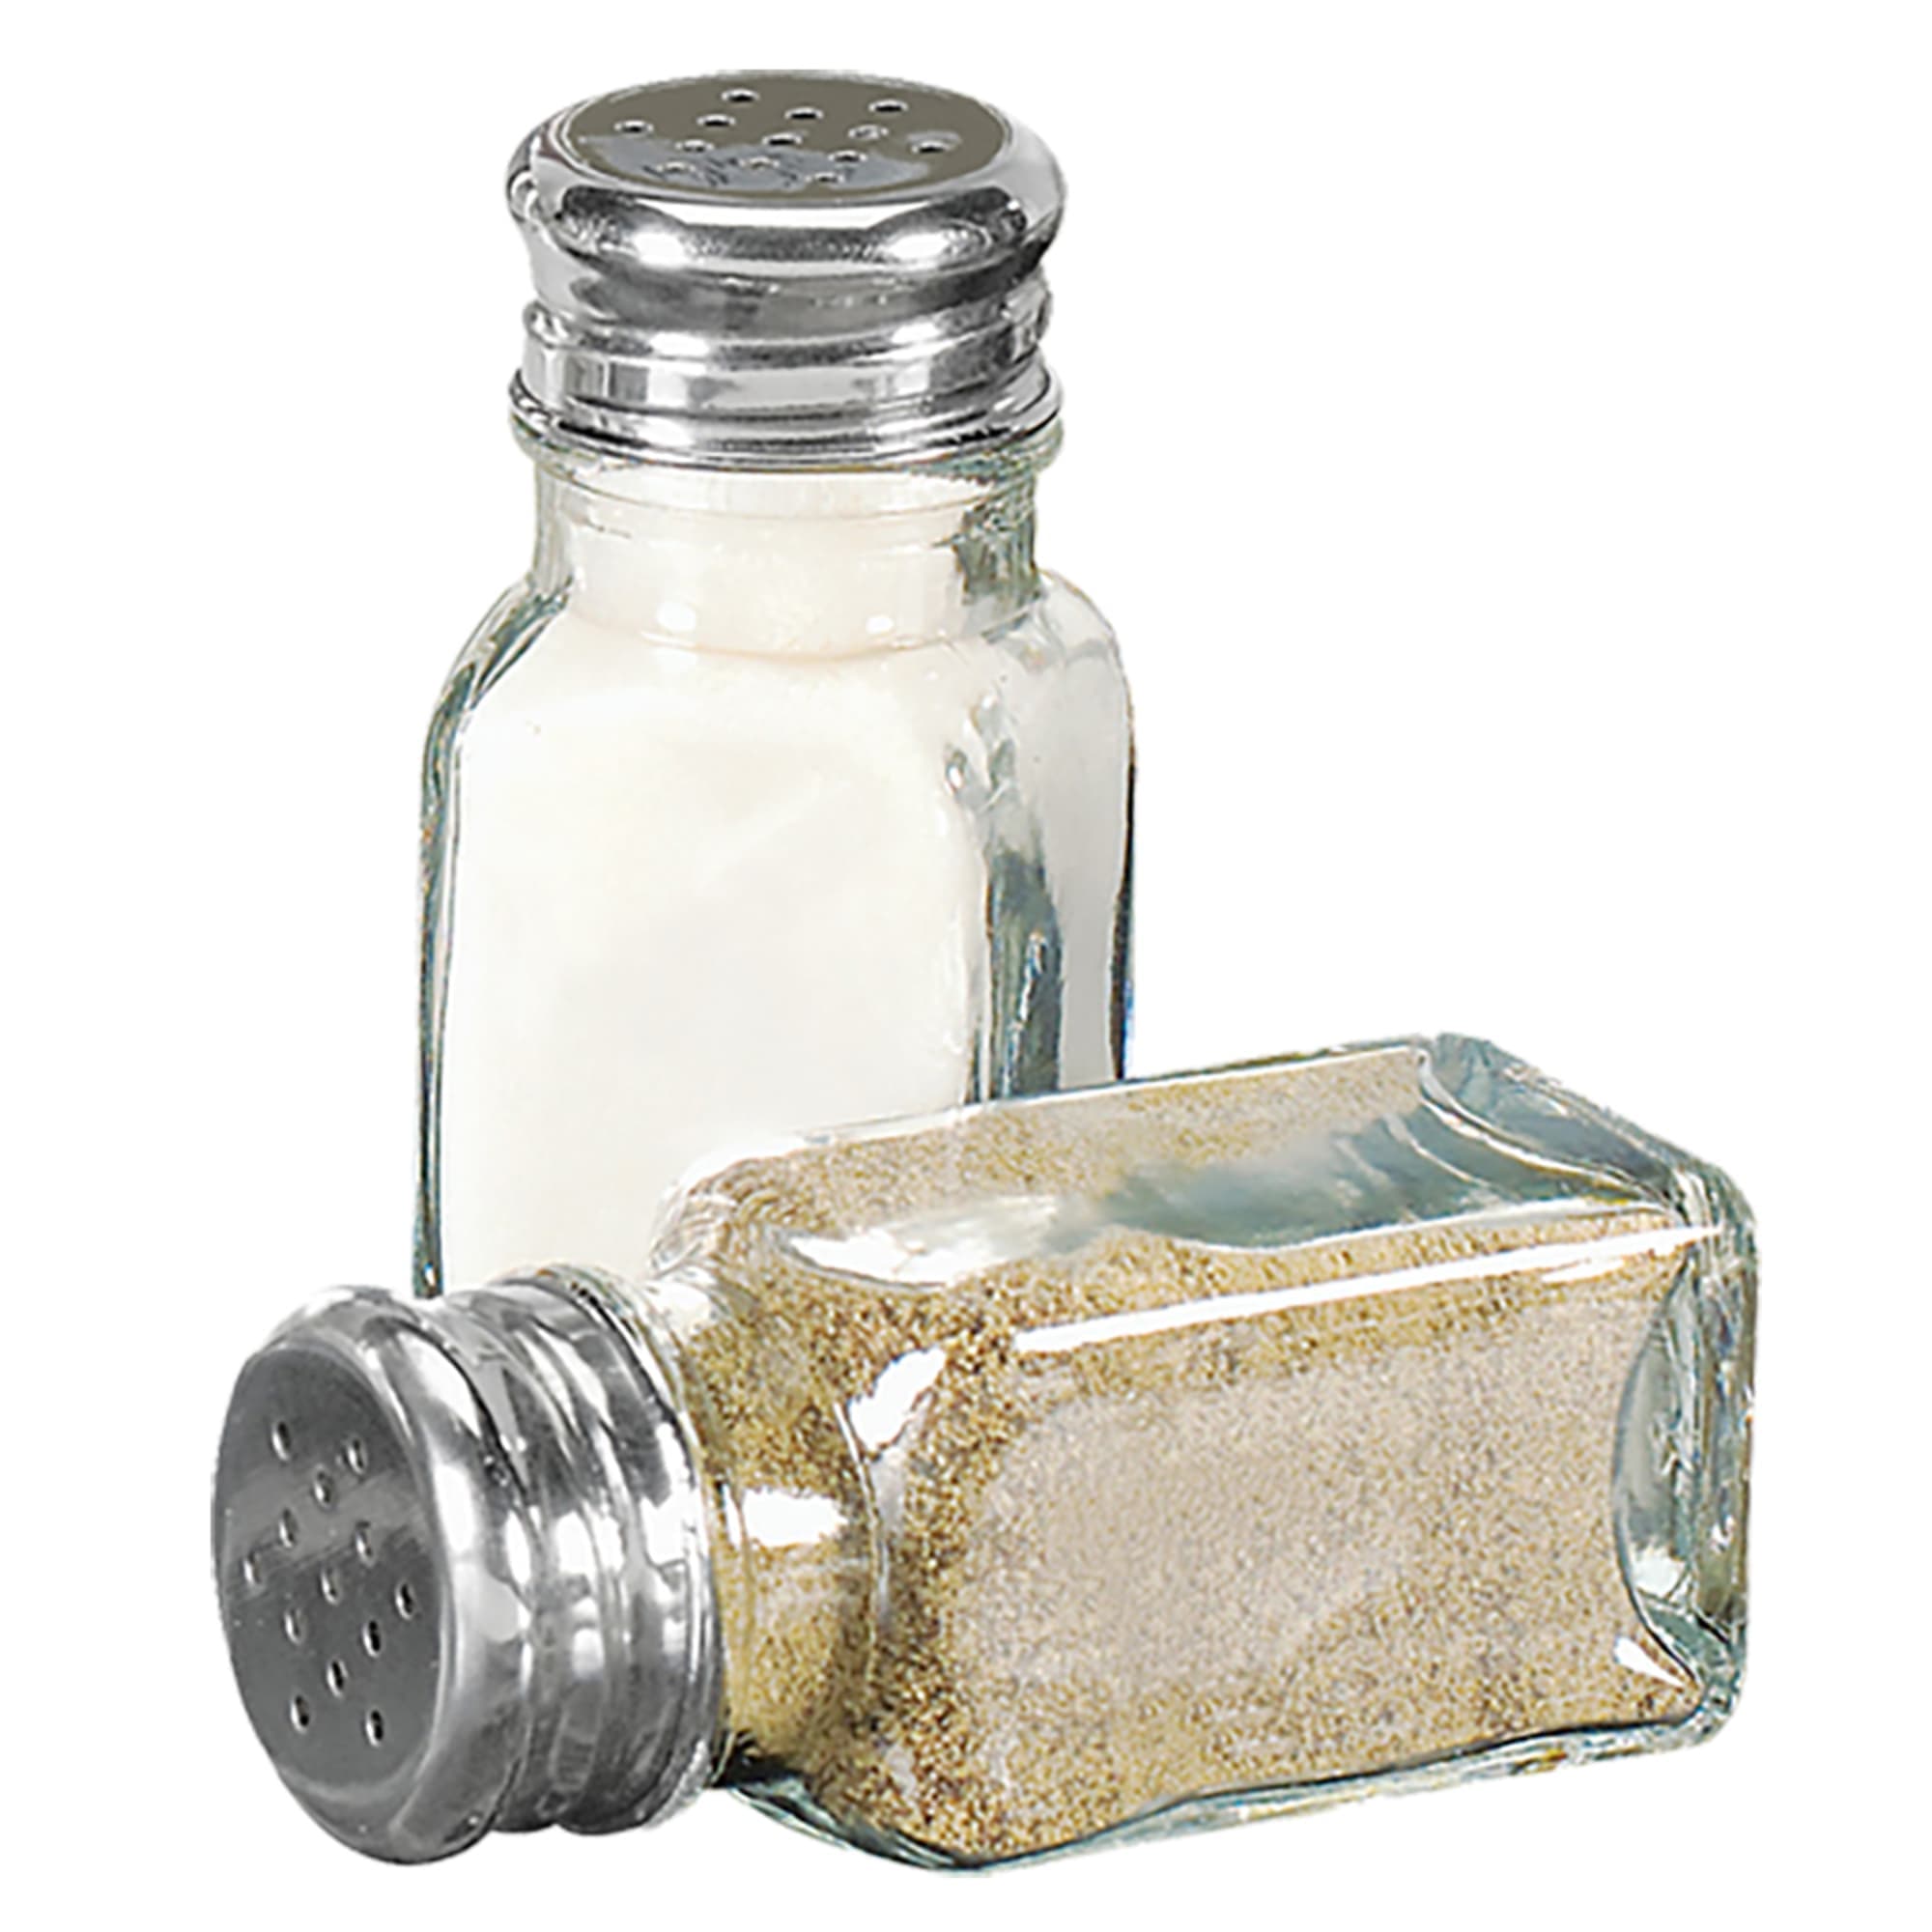 2 oz. Salt or Pepper Shaker